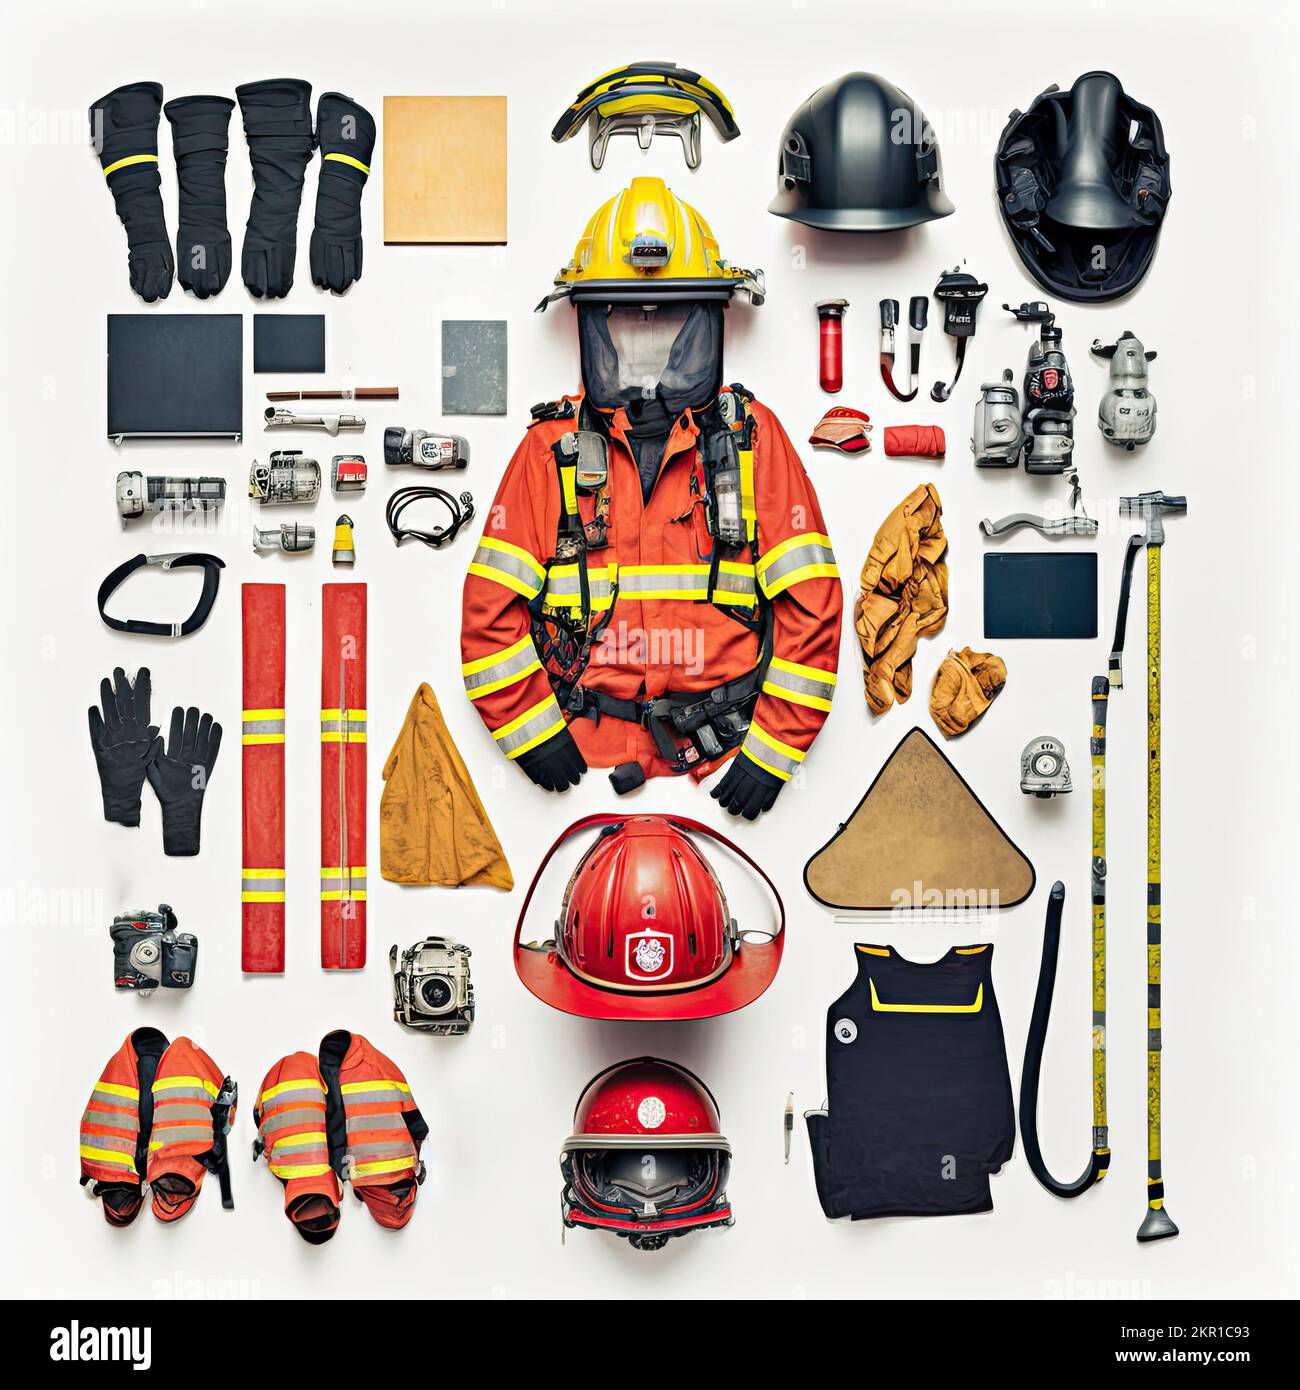 Knolling-Flatlay-Bild von Feuerwehrausrüstung mit Uniform und Helm. Löschausrüstung wie Feuerlöscher, Feuerdecke und Handschuhe auf weißem Rücken Stockfoto